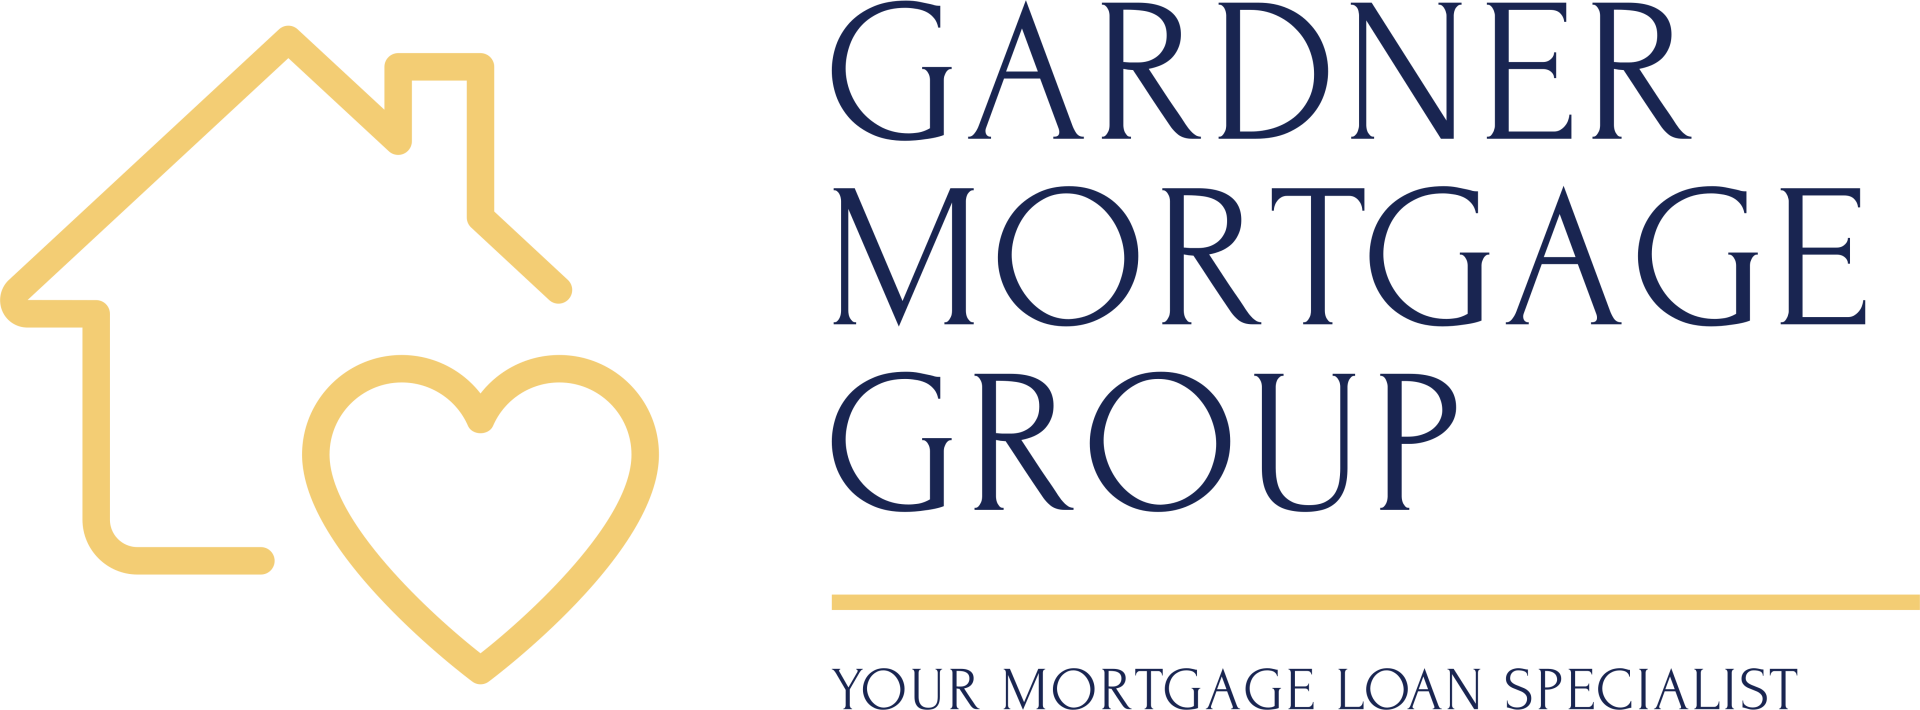 Gardner Mortgage Group Logo